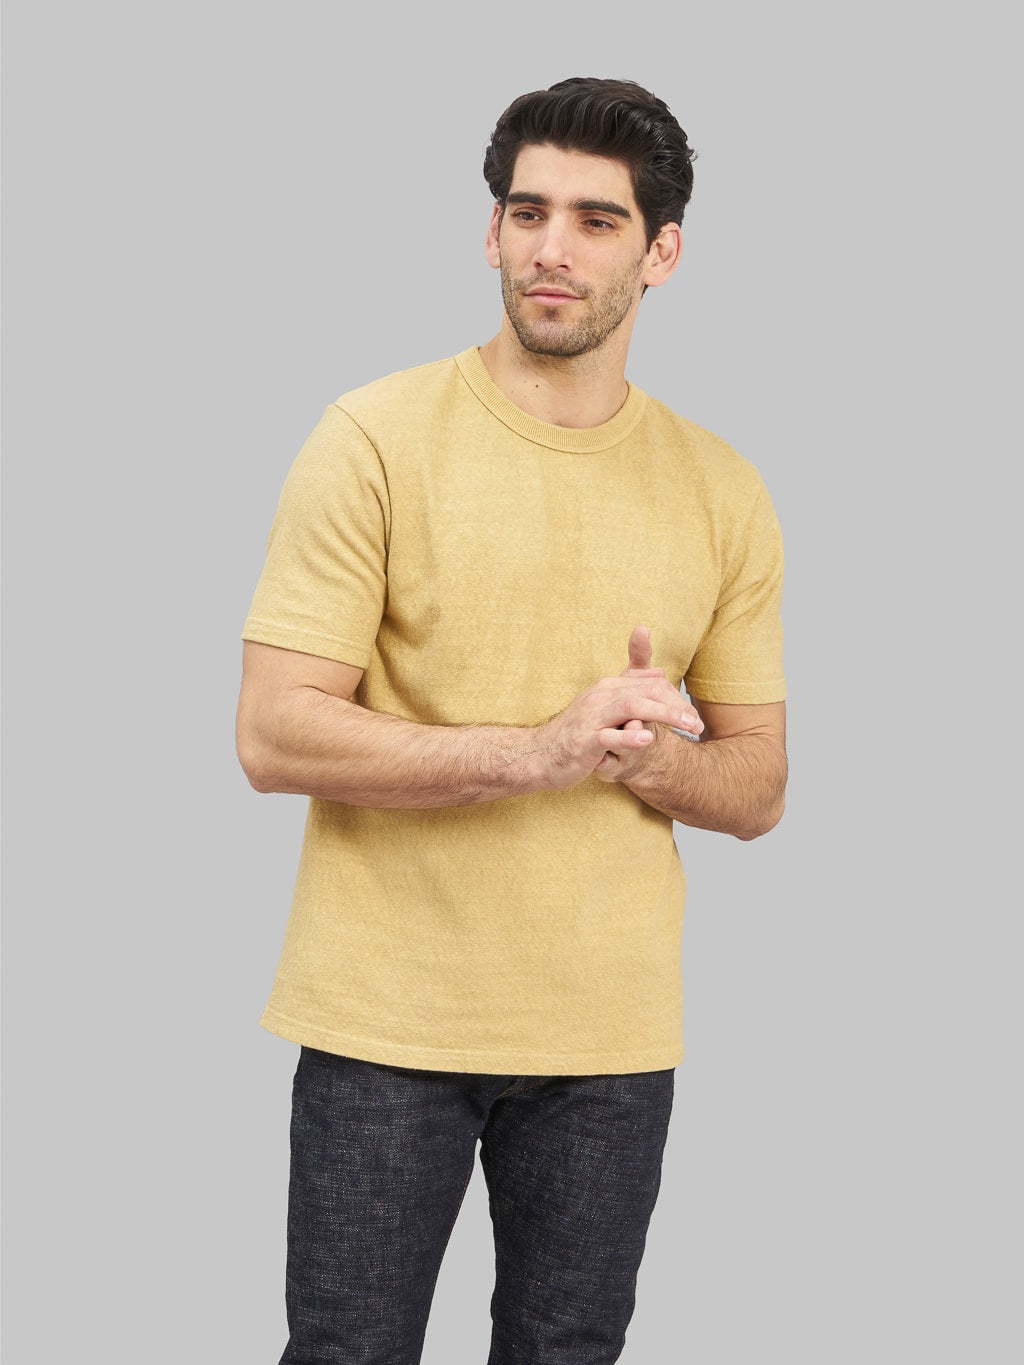 UES N8 Slub Nep Short Sleeve TShirt yellow style